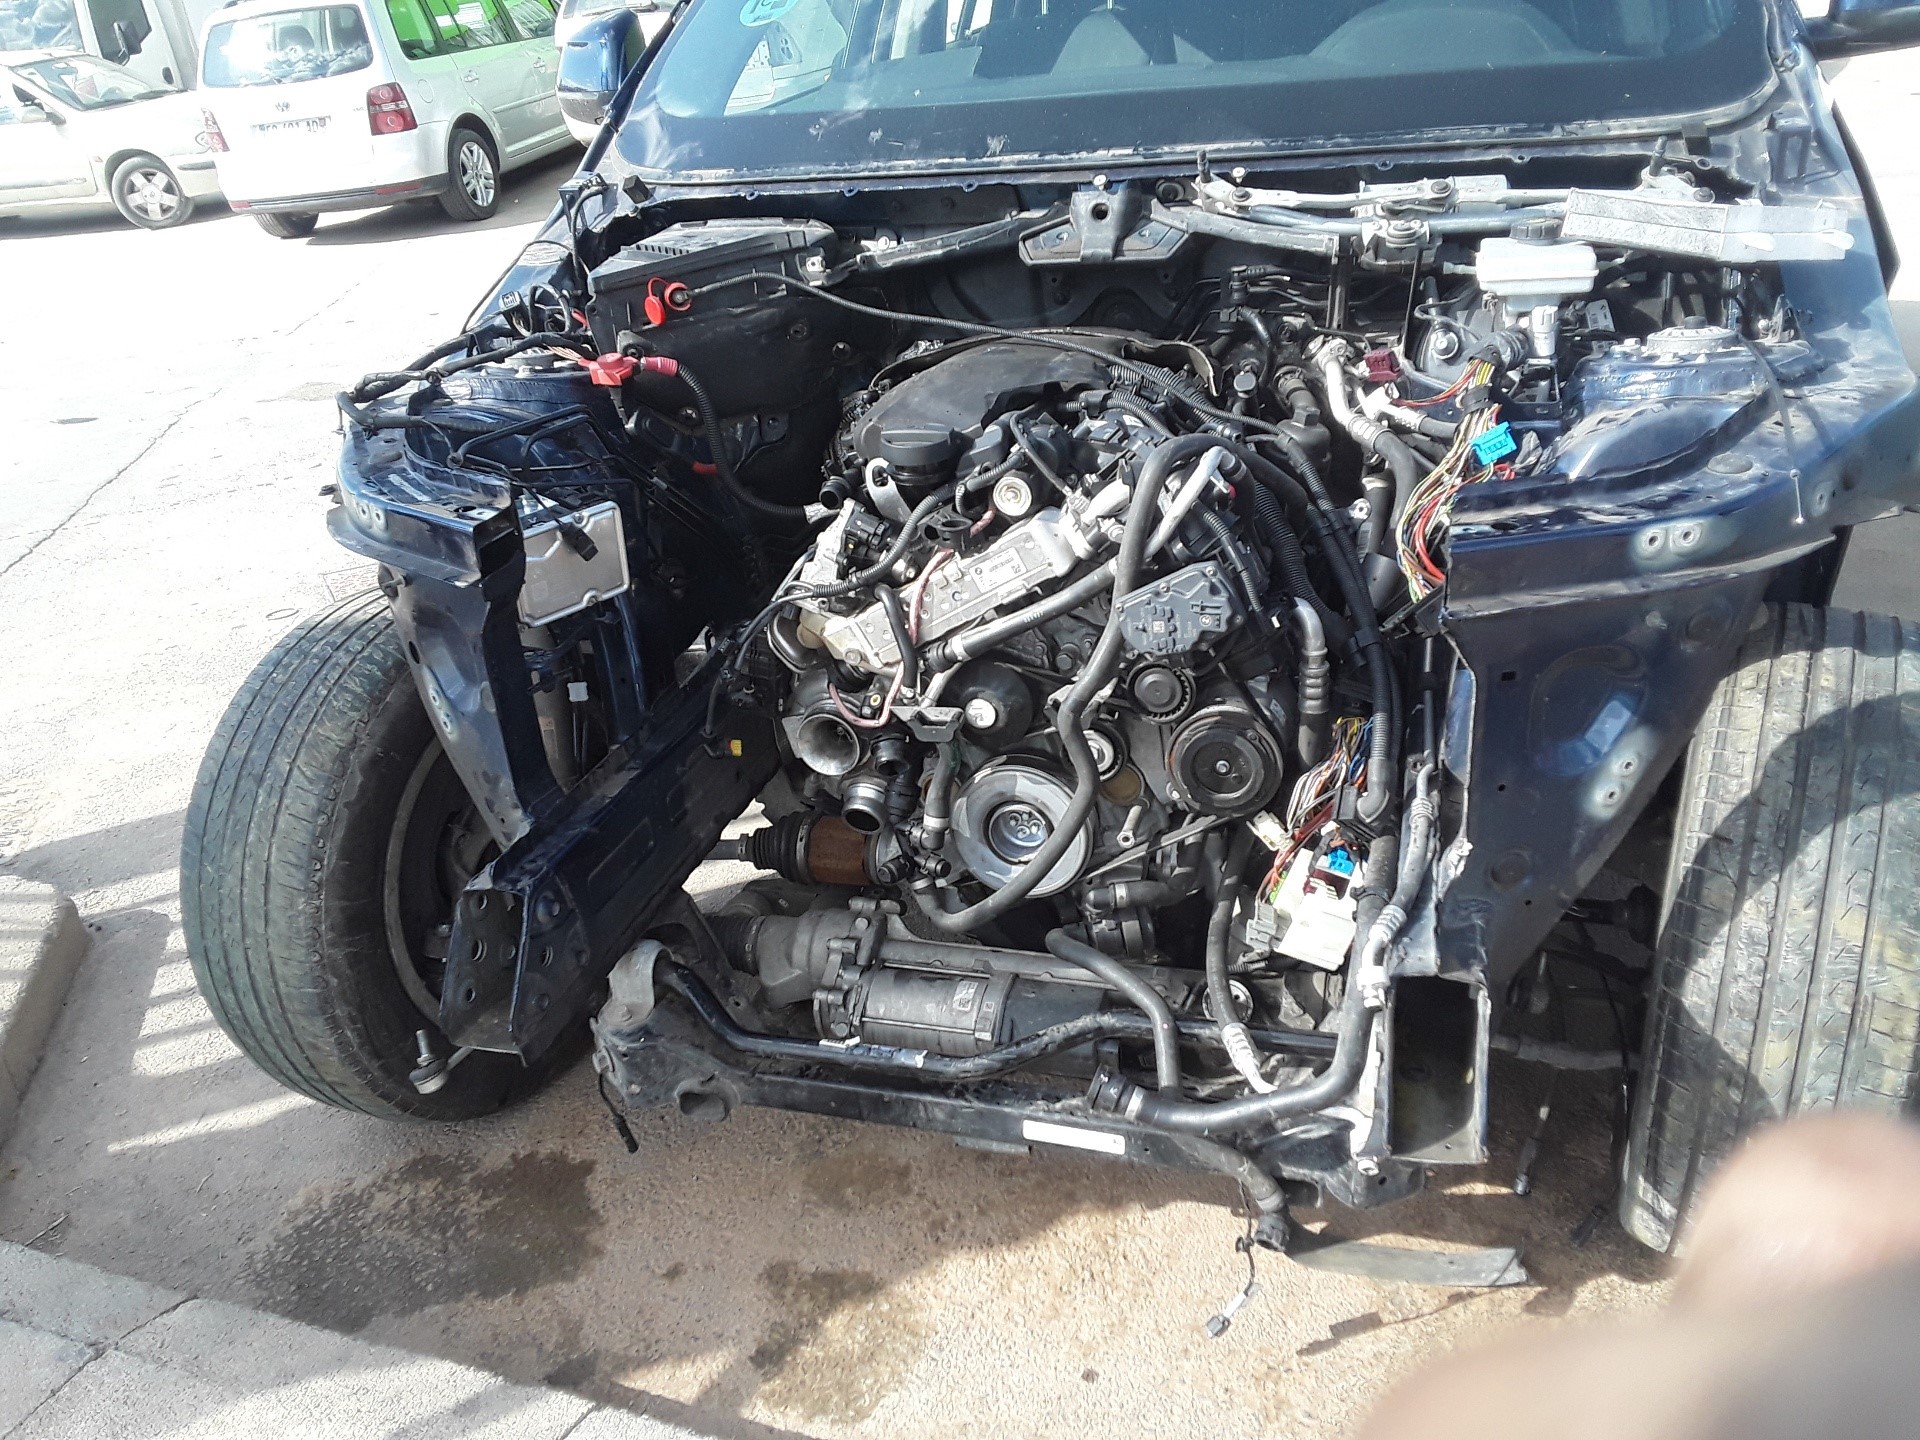 BMW X4 F26 (2014-2018) Gear Shifting Knob 1009997500 19262117